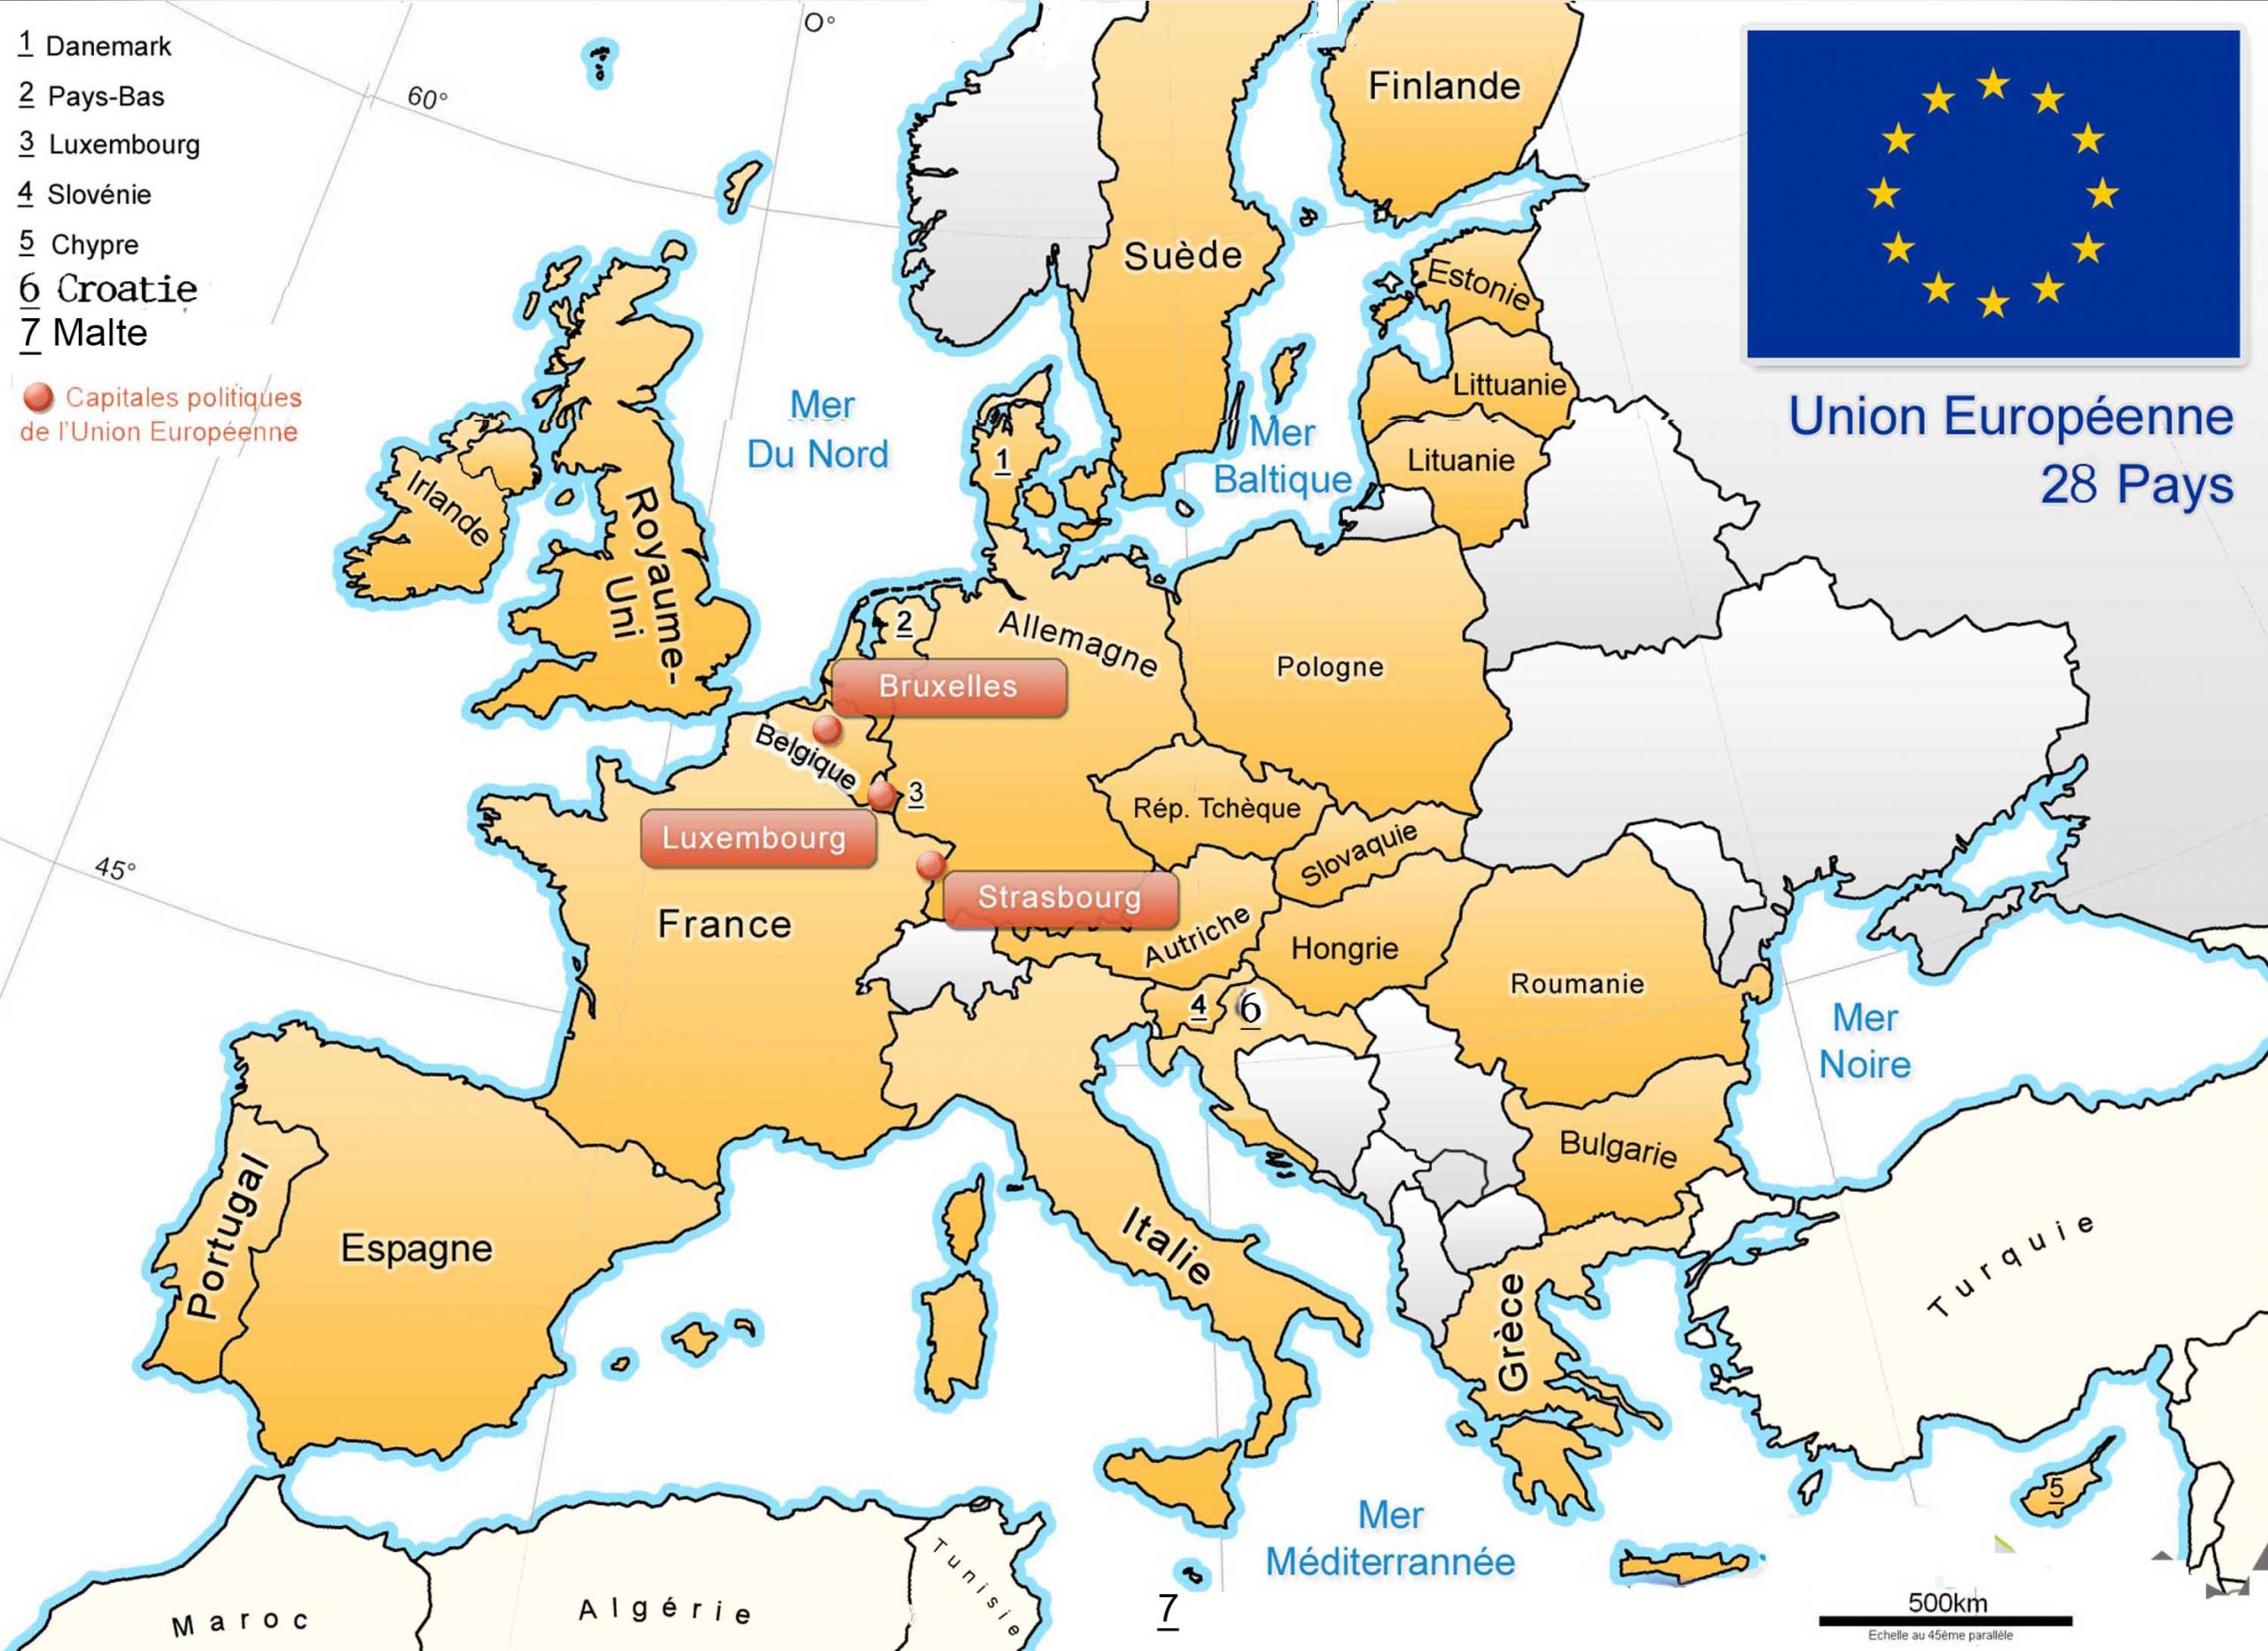 Apprendre À Placer Les Pays De L' Union Européenne - Le Blog pour Liste Des Pays De L Union Européenne Et Leurs Capitales